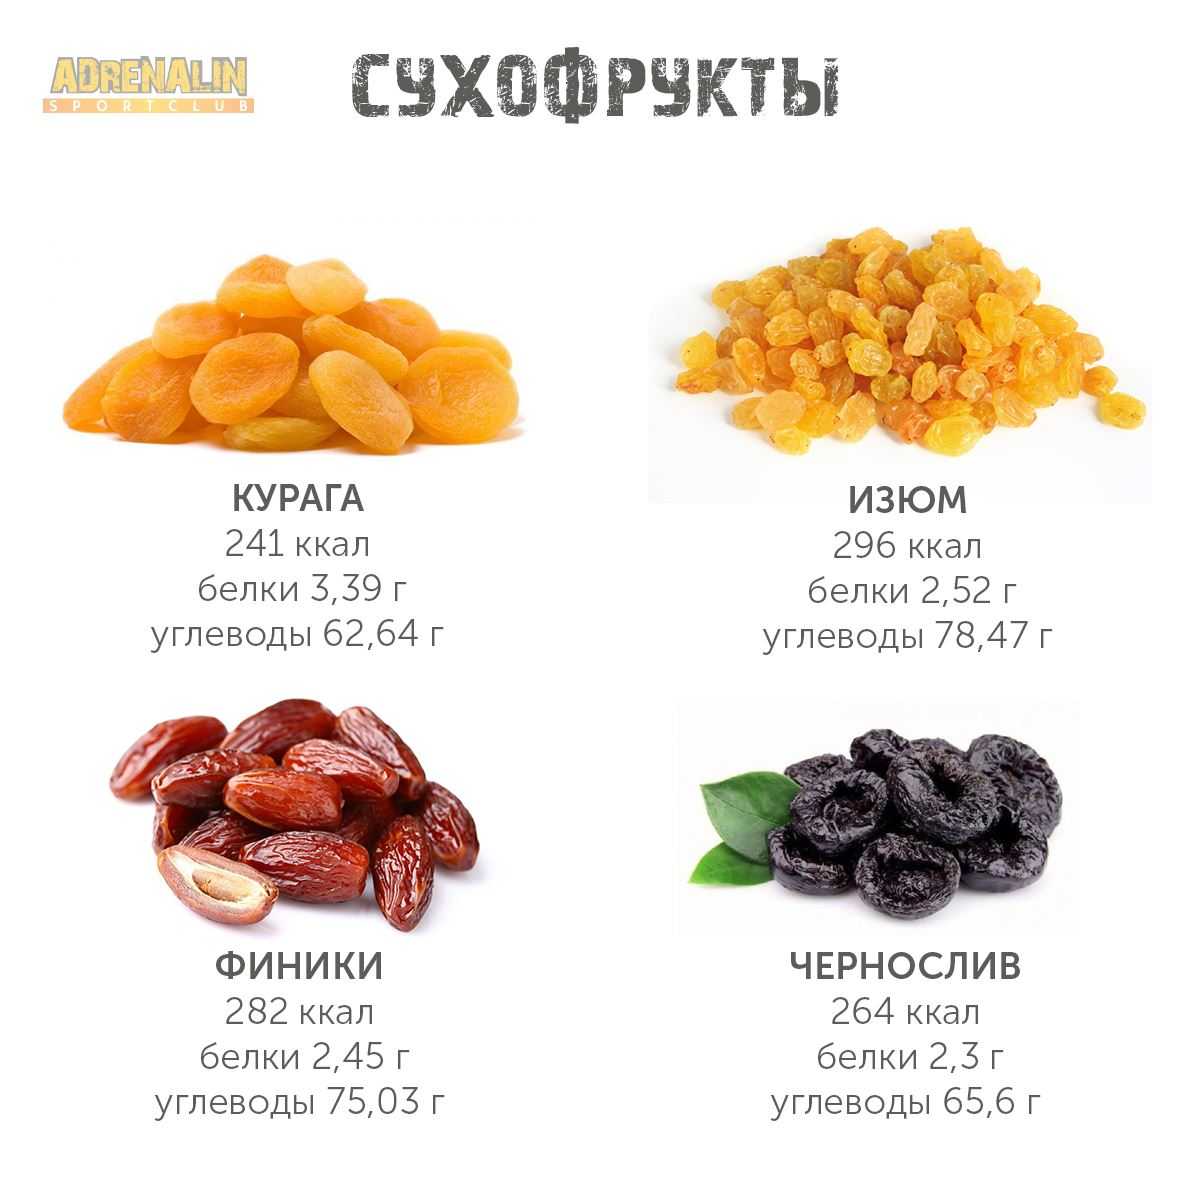 Горький шоколад - польза и вред, выбор качественного, употребление на диете, рейтинг лучшего в россии и цена